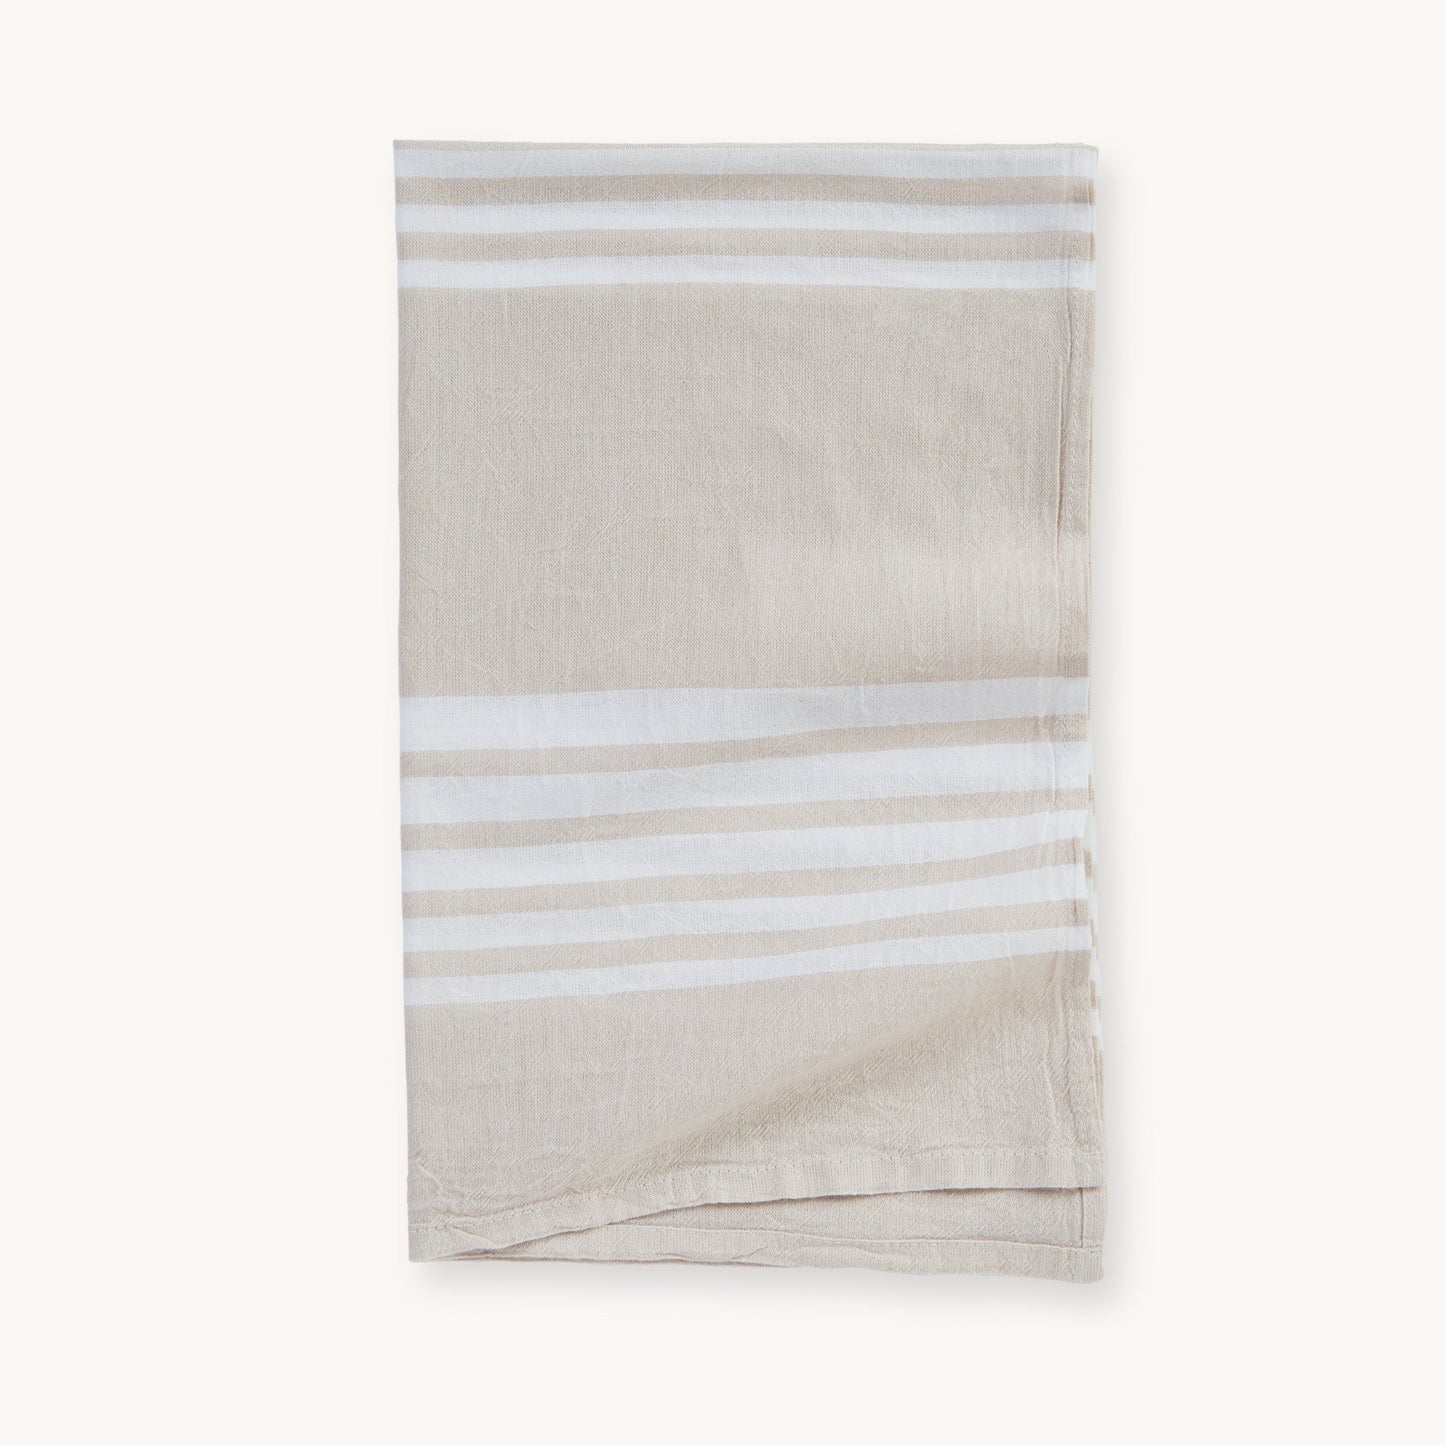 Hayal Hand Towel - Set of 2 - Sand